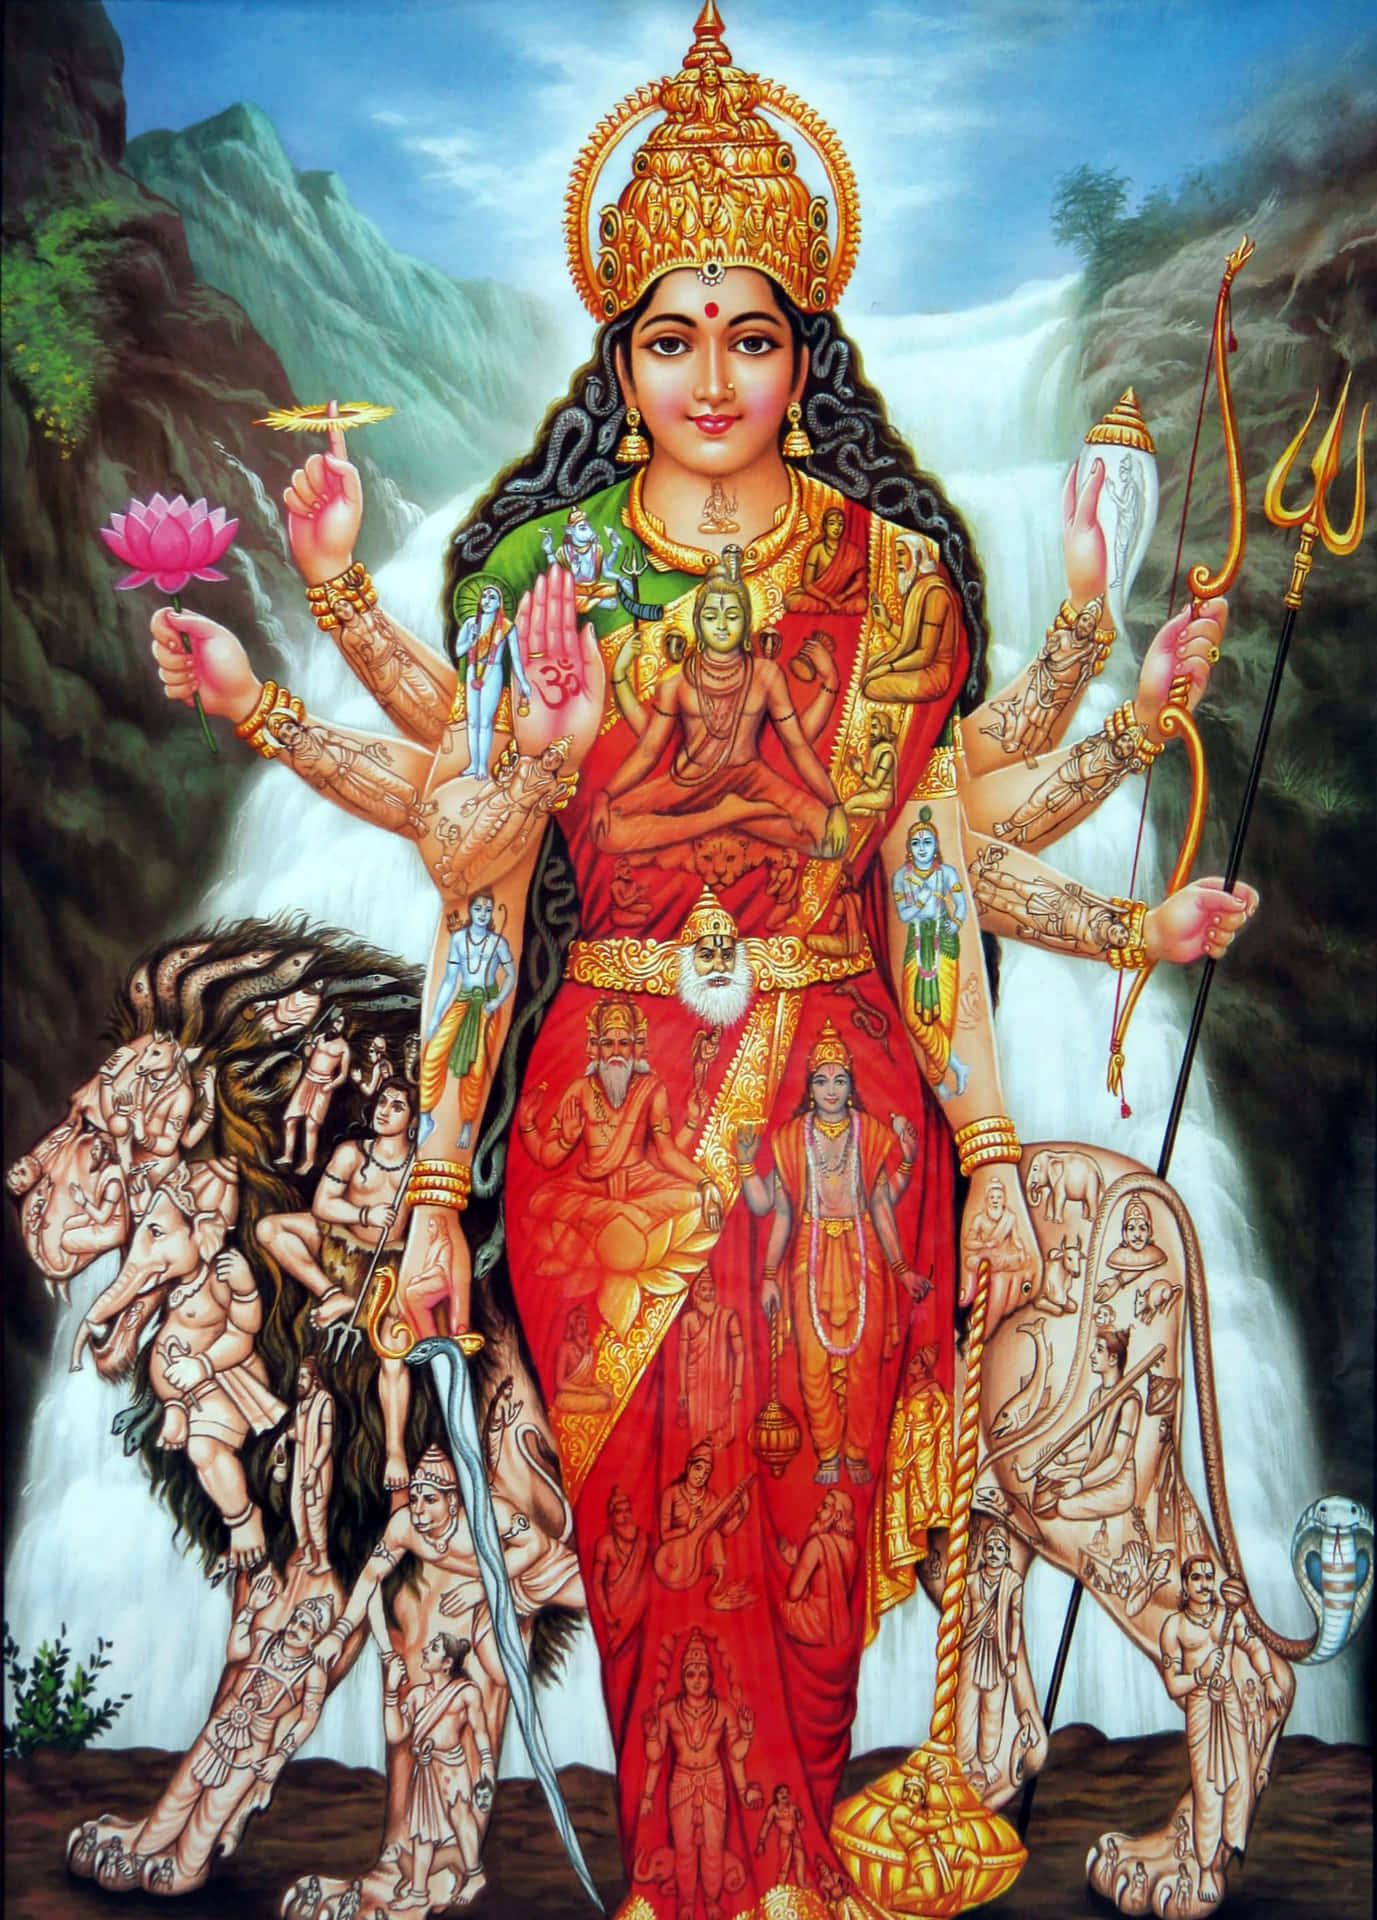 Imagende Durga Maa Con Cataratas.